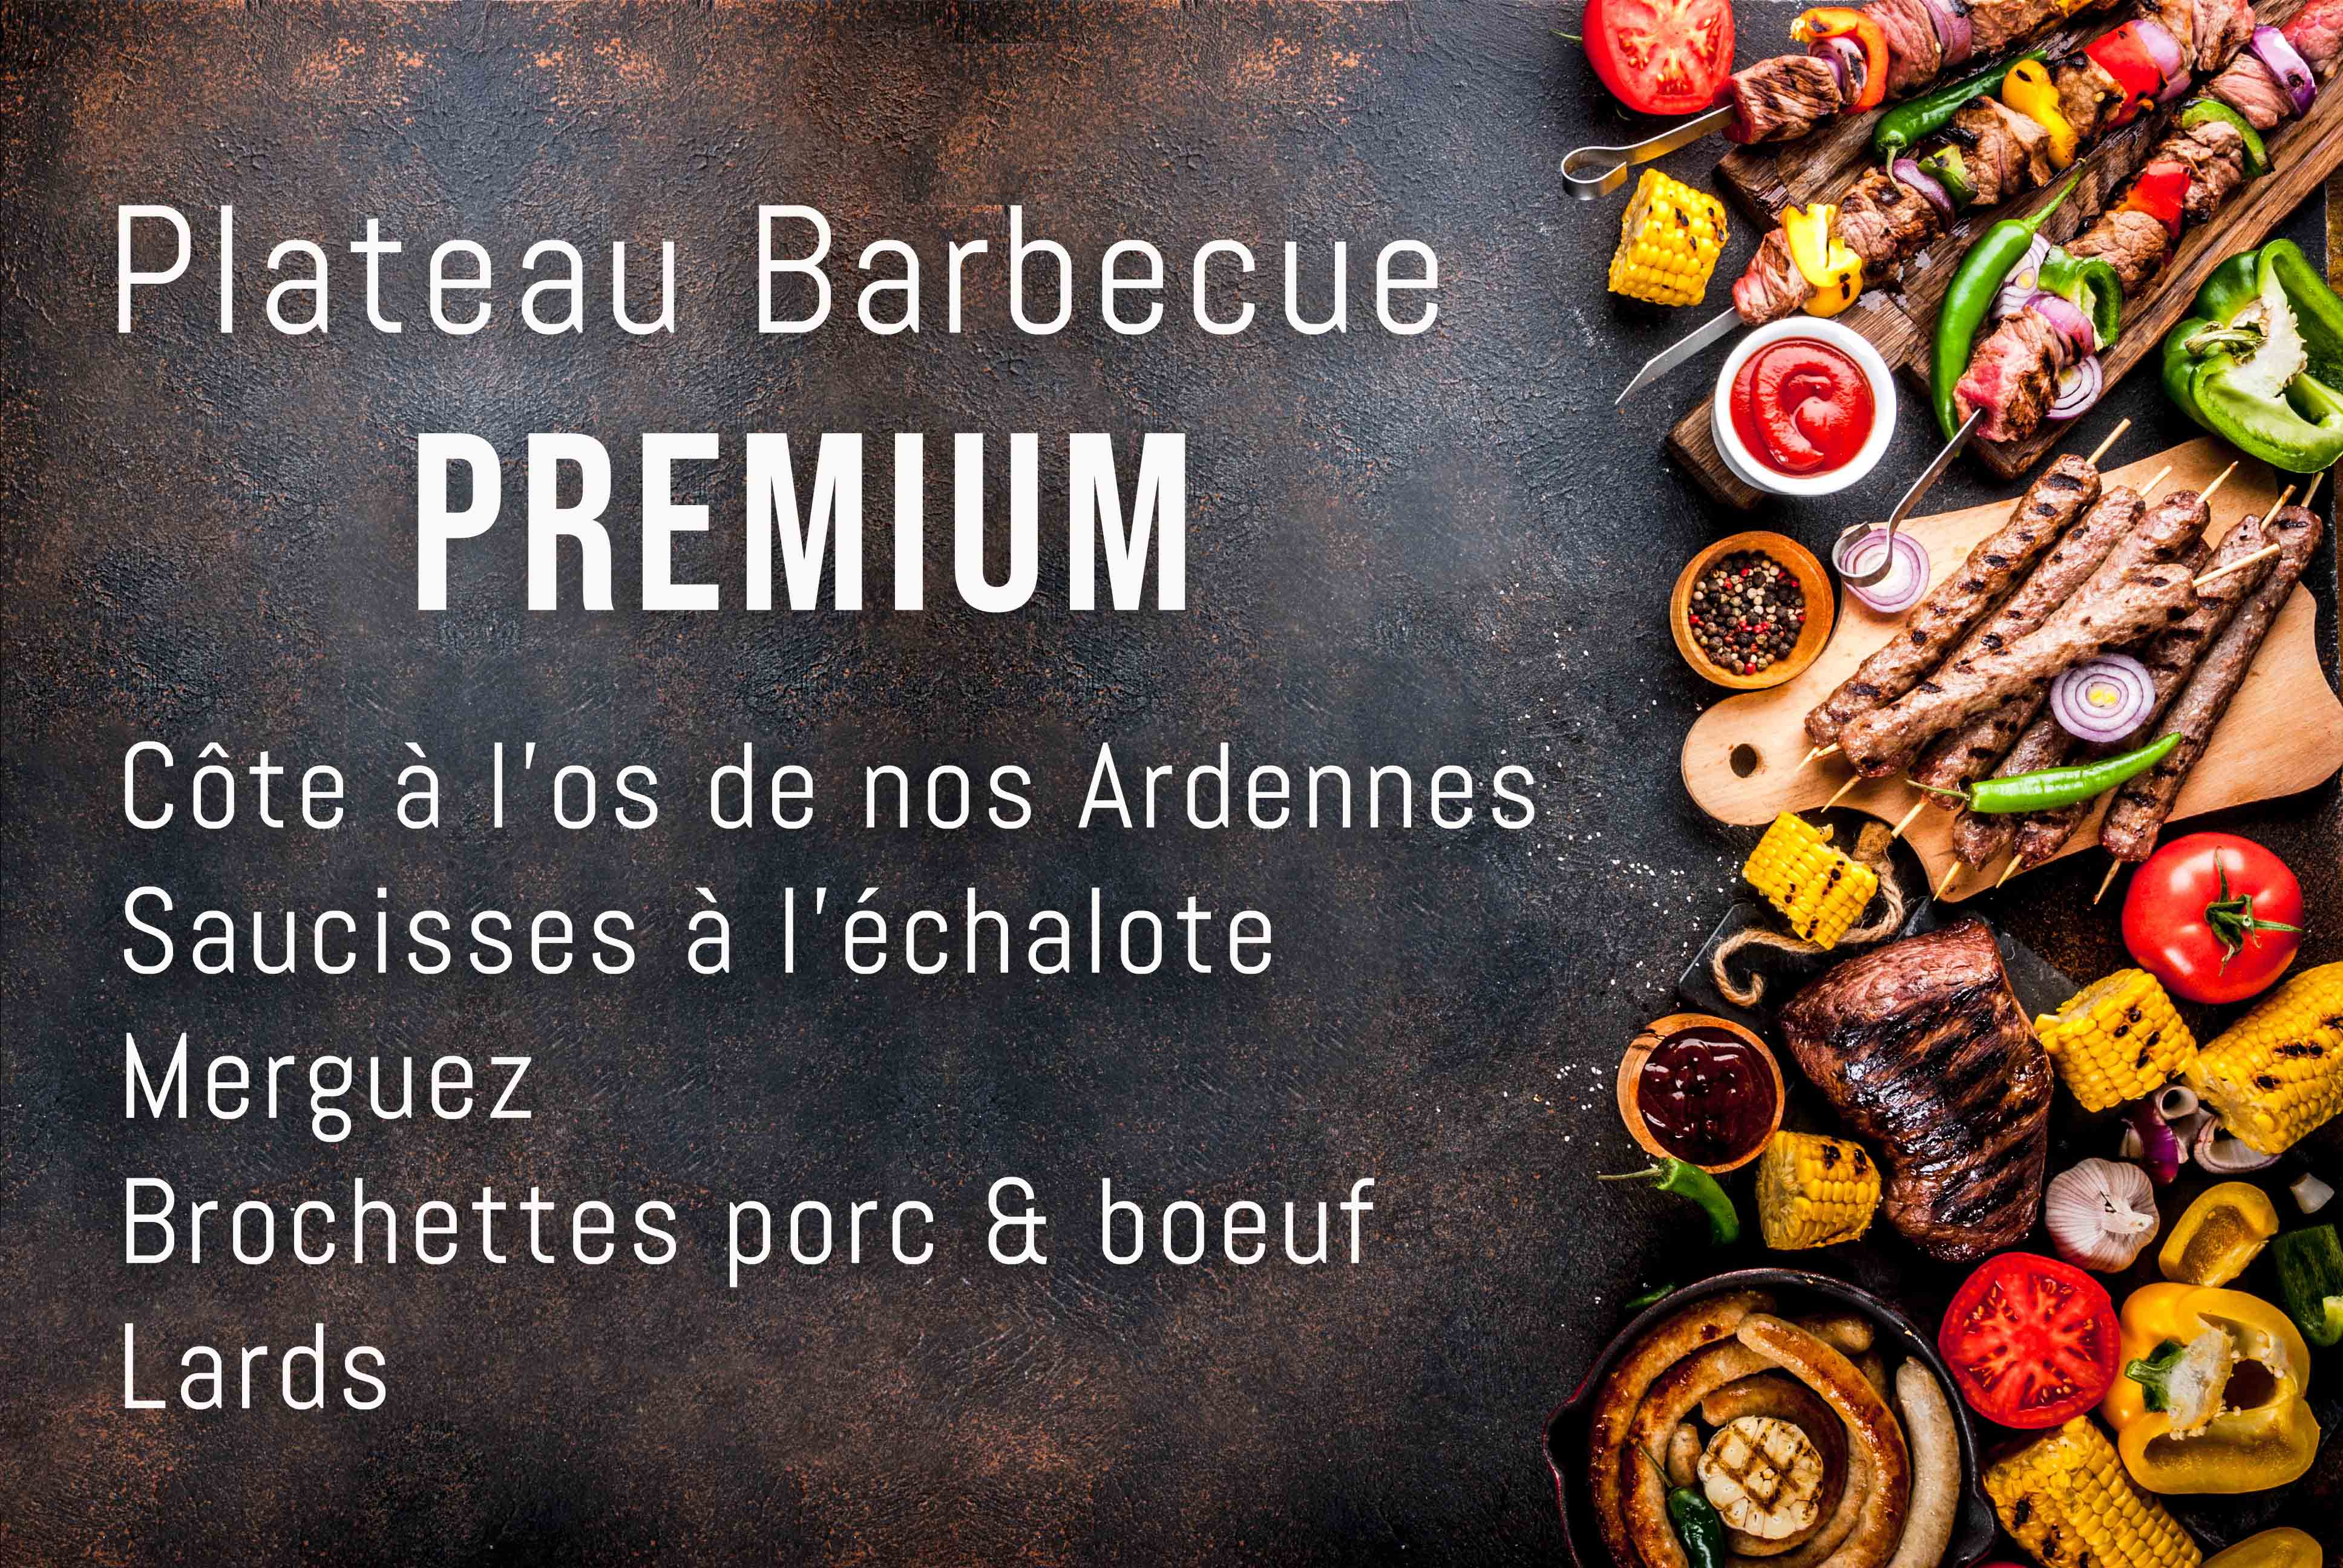 "Premium" barbecue assortiment